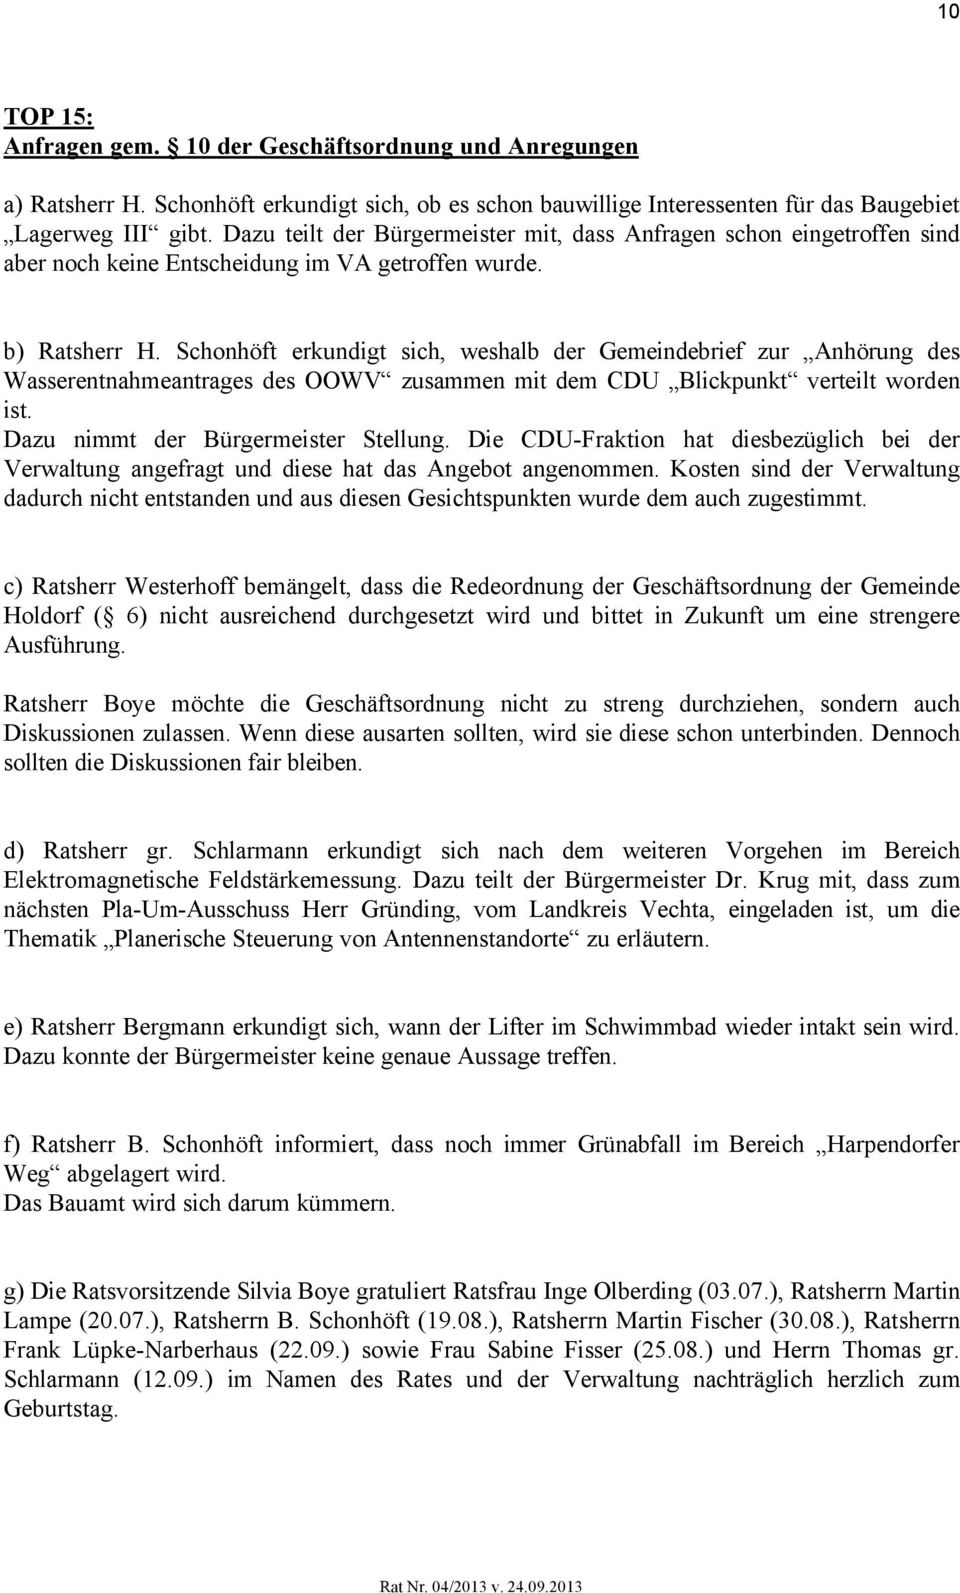 Schonhöft erkundigt sich, weshalb der Gemeindebrief zur Anhörung des Wasserentnahmeantrages des OOWV zusammen mit dem CDU Blickpunkt verteilt worden ist. Dazu nimmt der Bürgermeister Stellung.